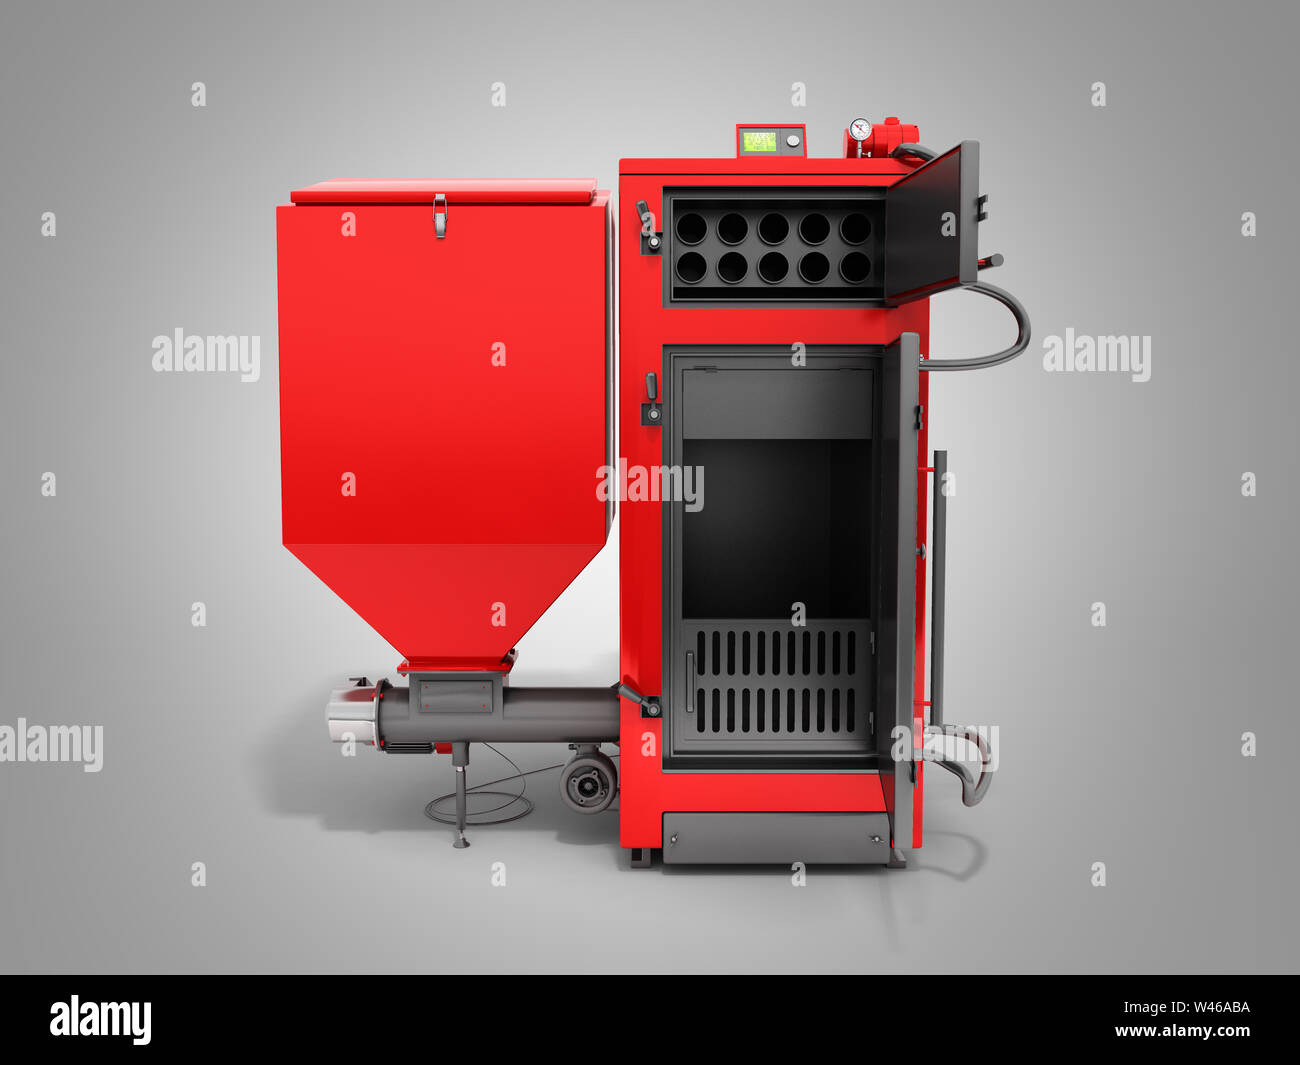 Solid fuel boiler immagini e fotografie stock ad alta risoluzione - Alamy